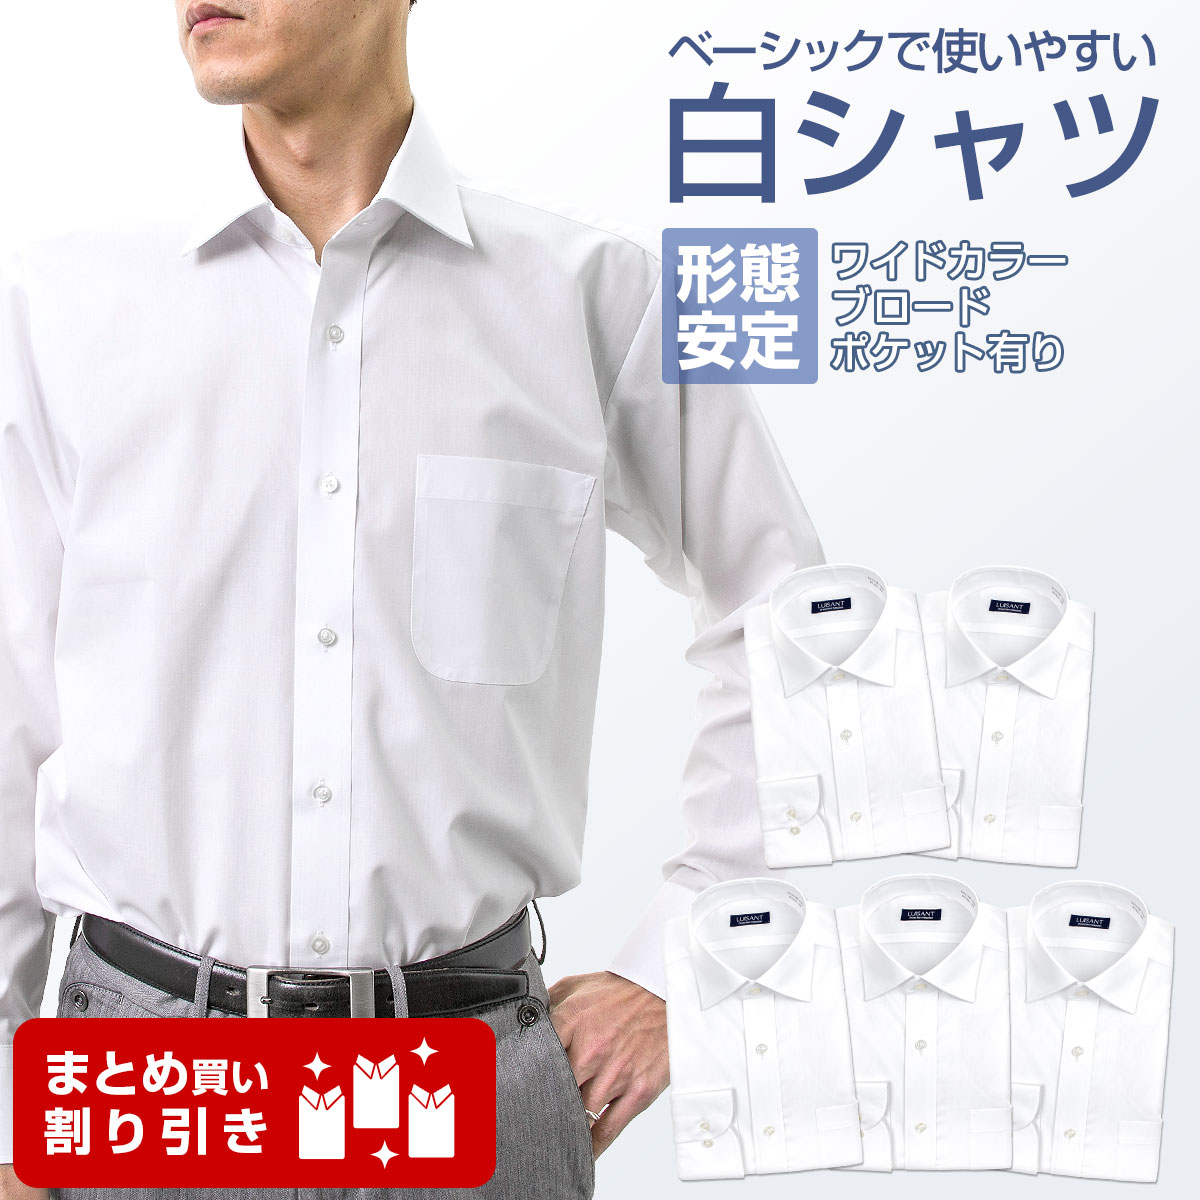 白ワイシャツ 長袖5枚セット 1枚あたり1299円 形態安定 標準体 ワイシャツ 送料込み［5枚セット/3枚セット/単品購入OK］